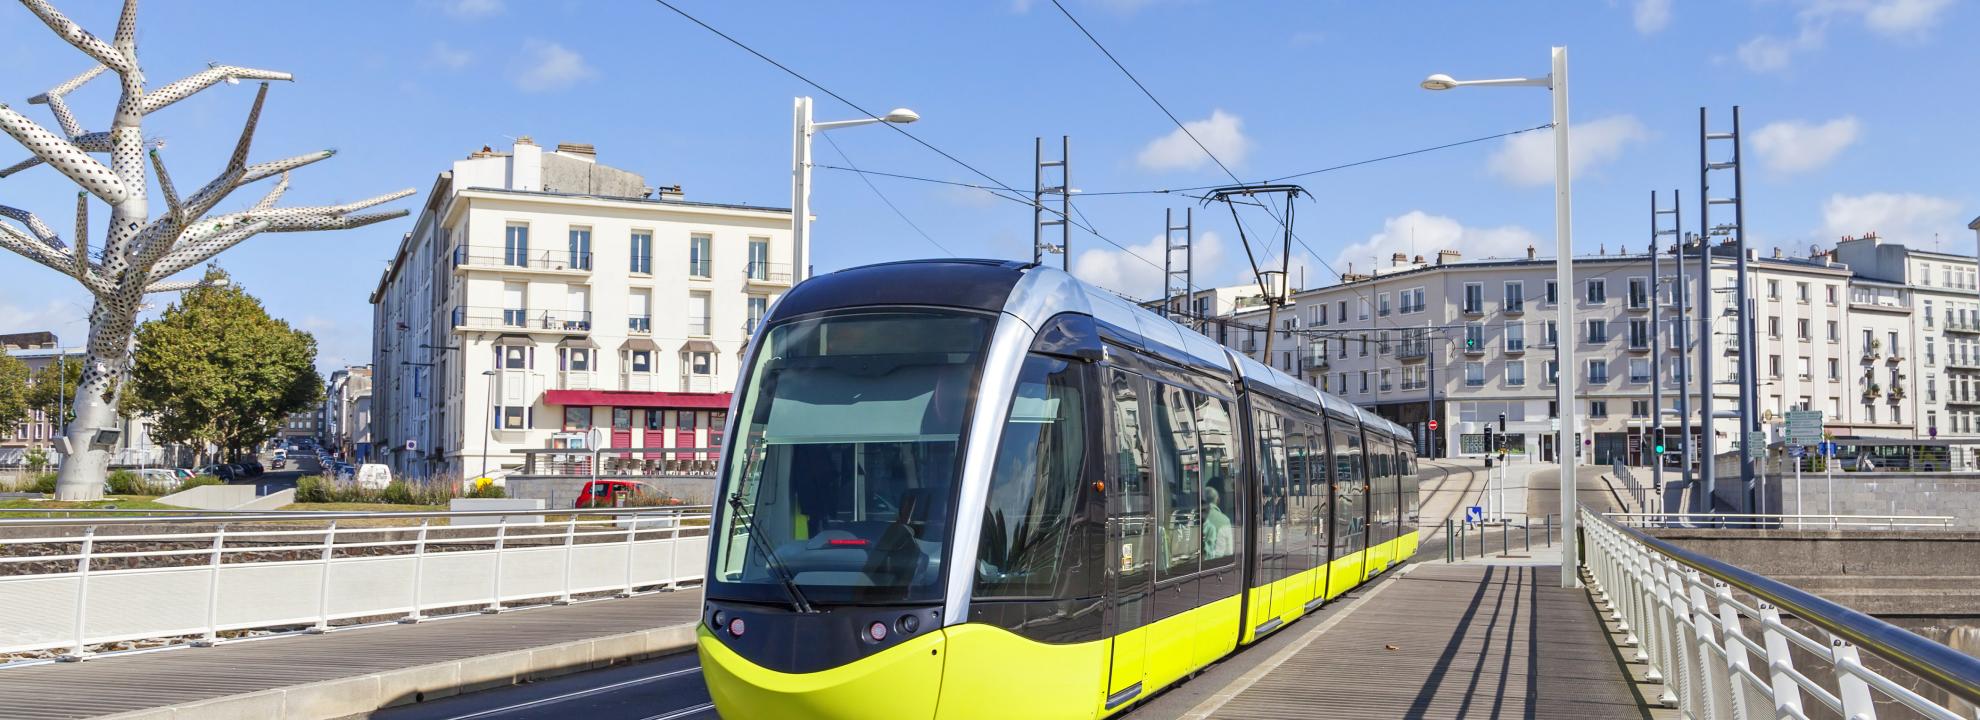 Le Tram au Centre-ville de Brest